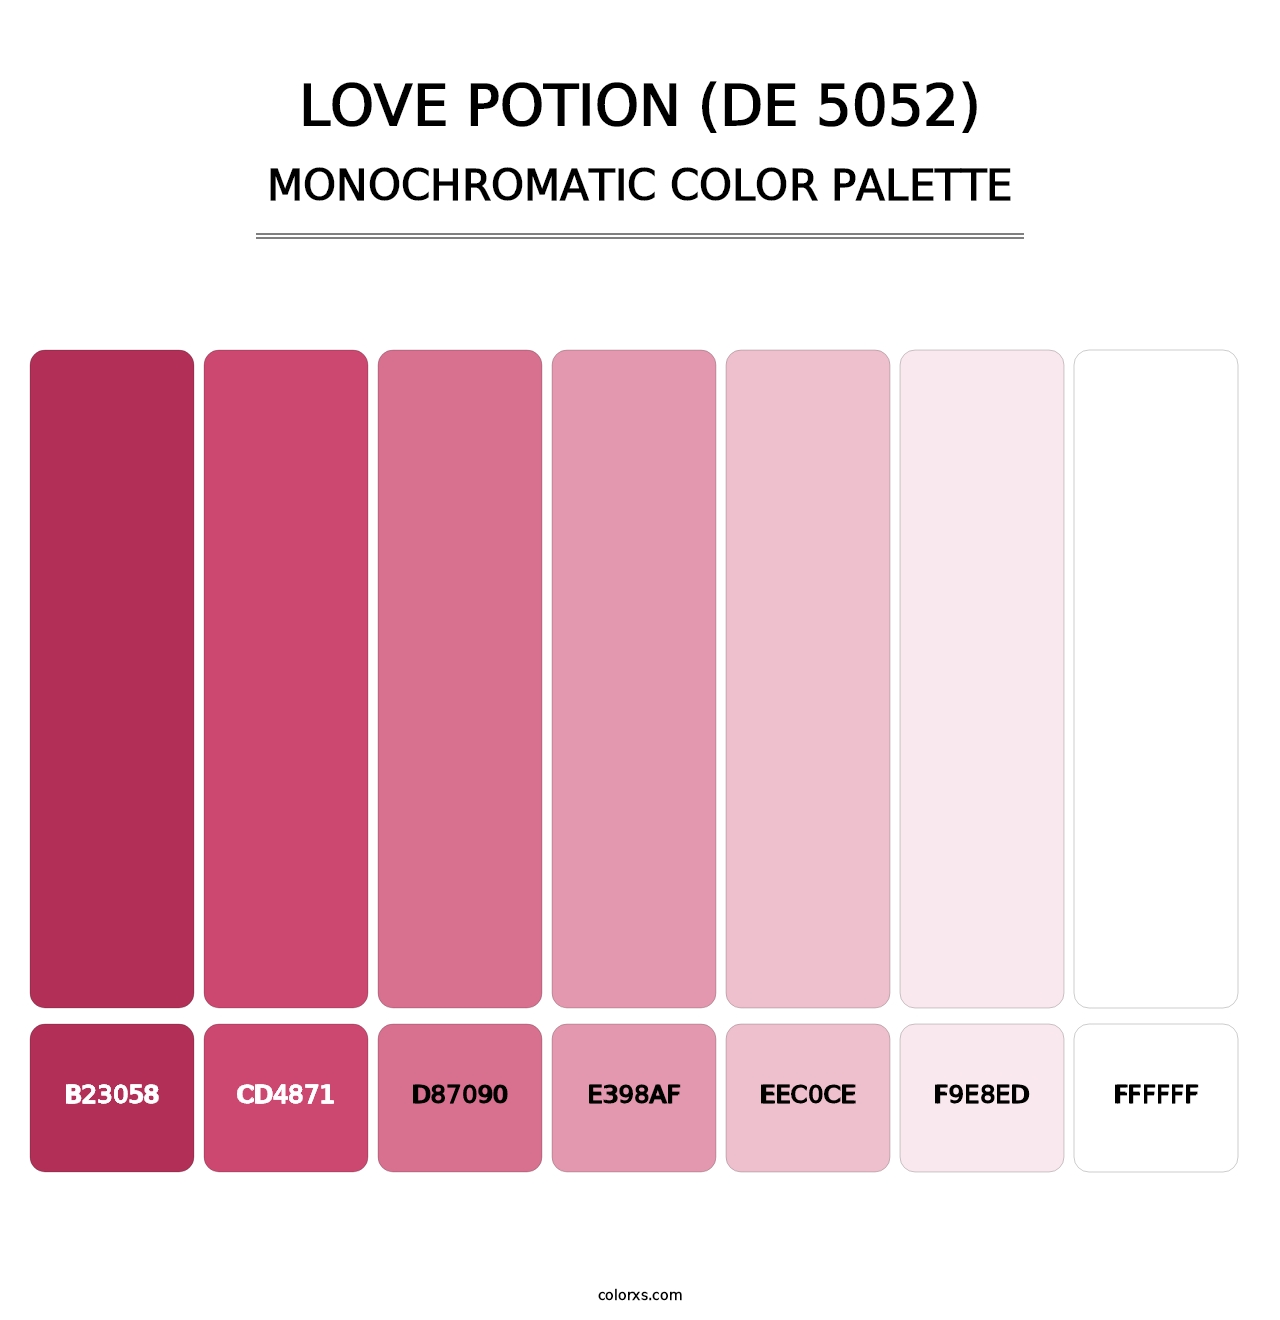 Love Potion (DE 5052) - Monochromatic Color Palette